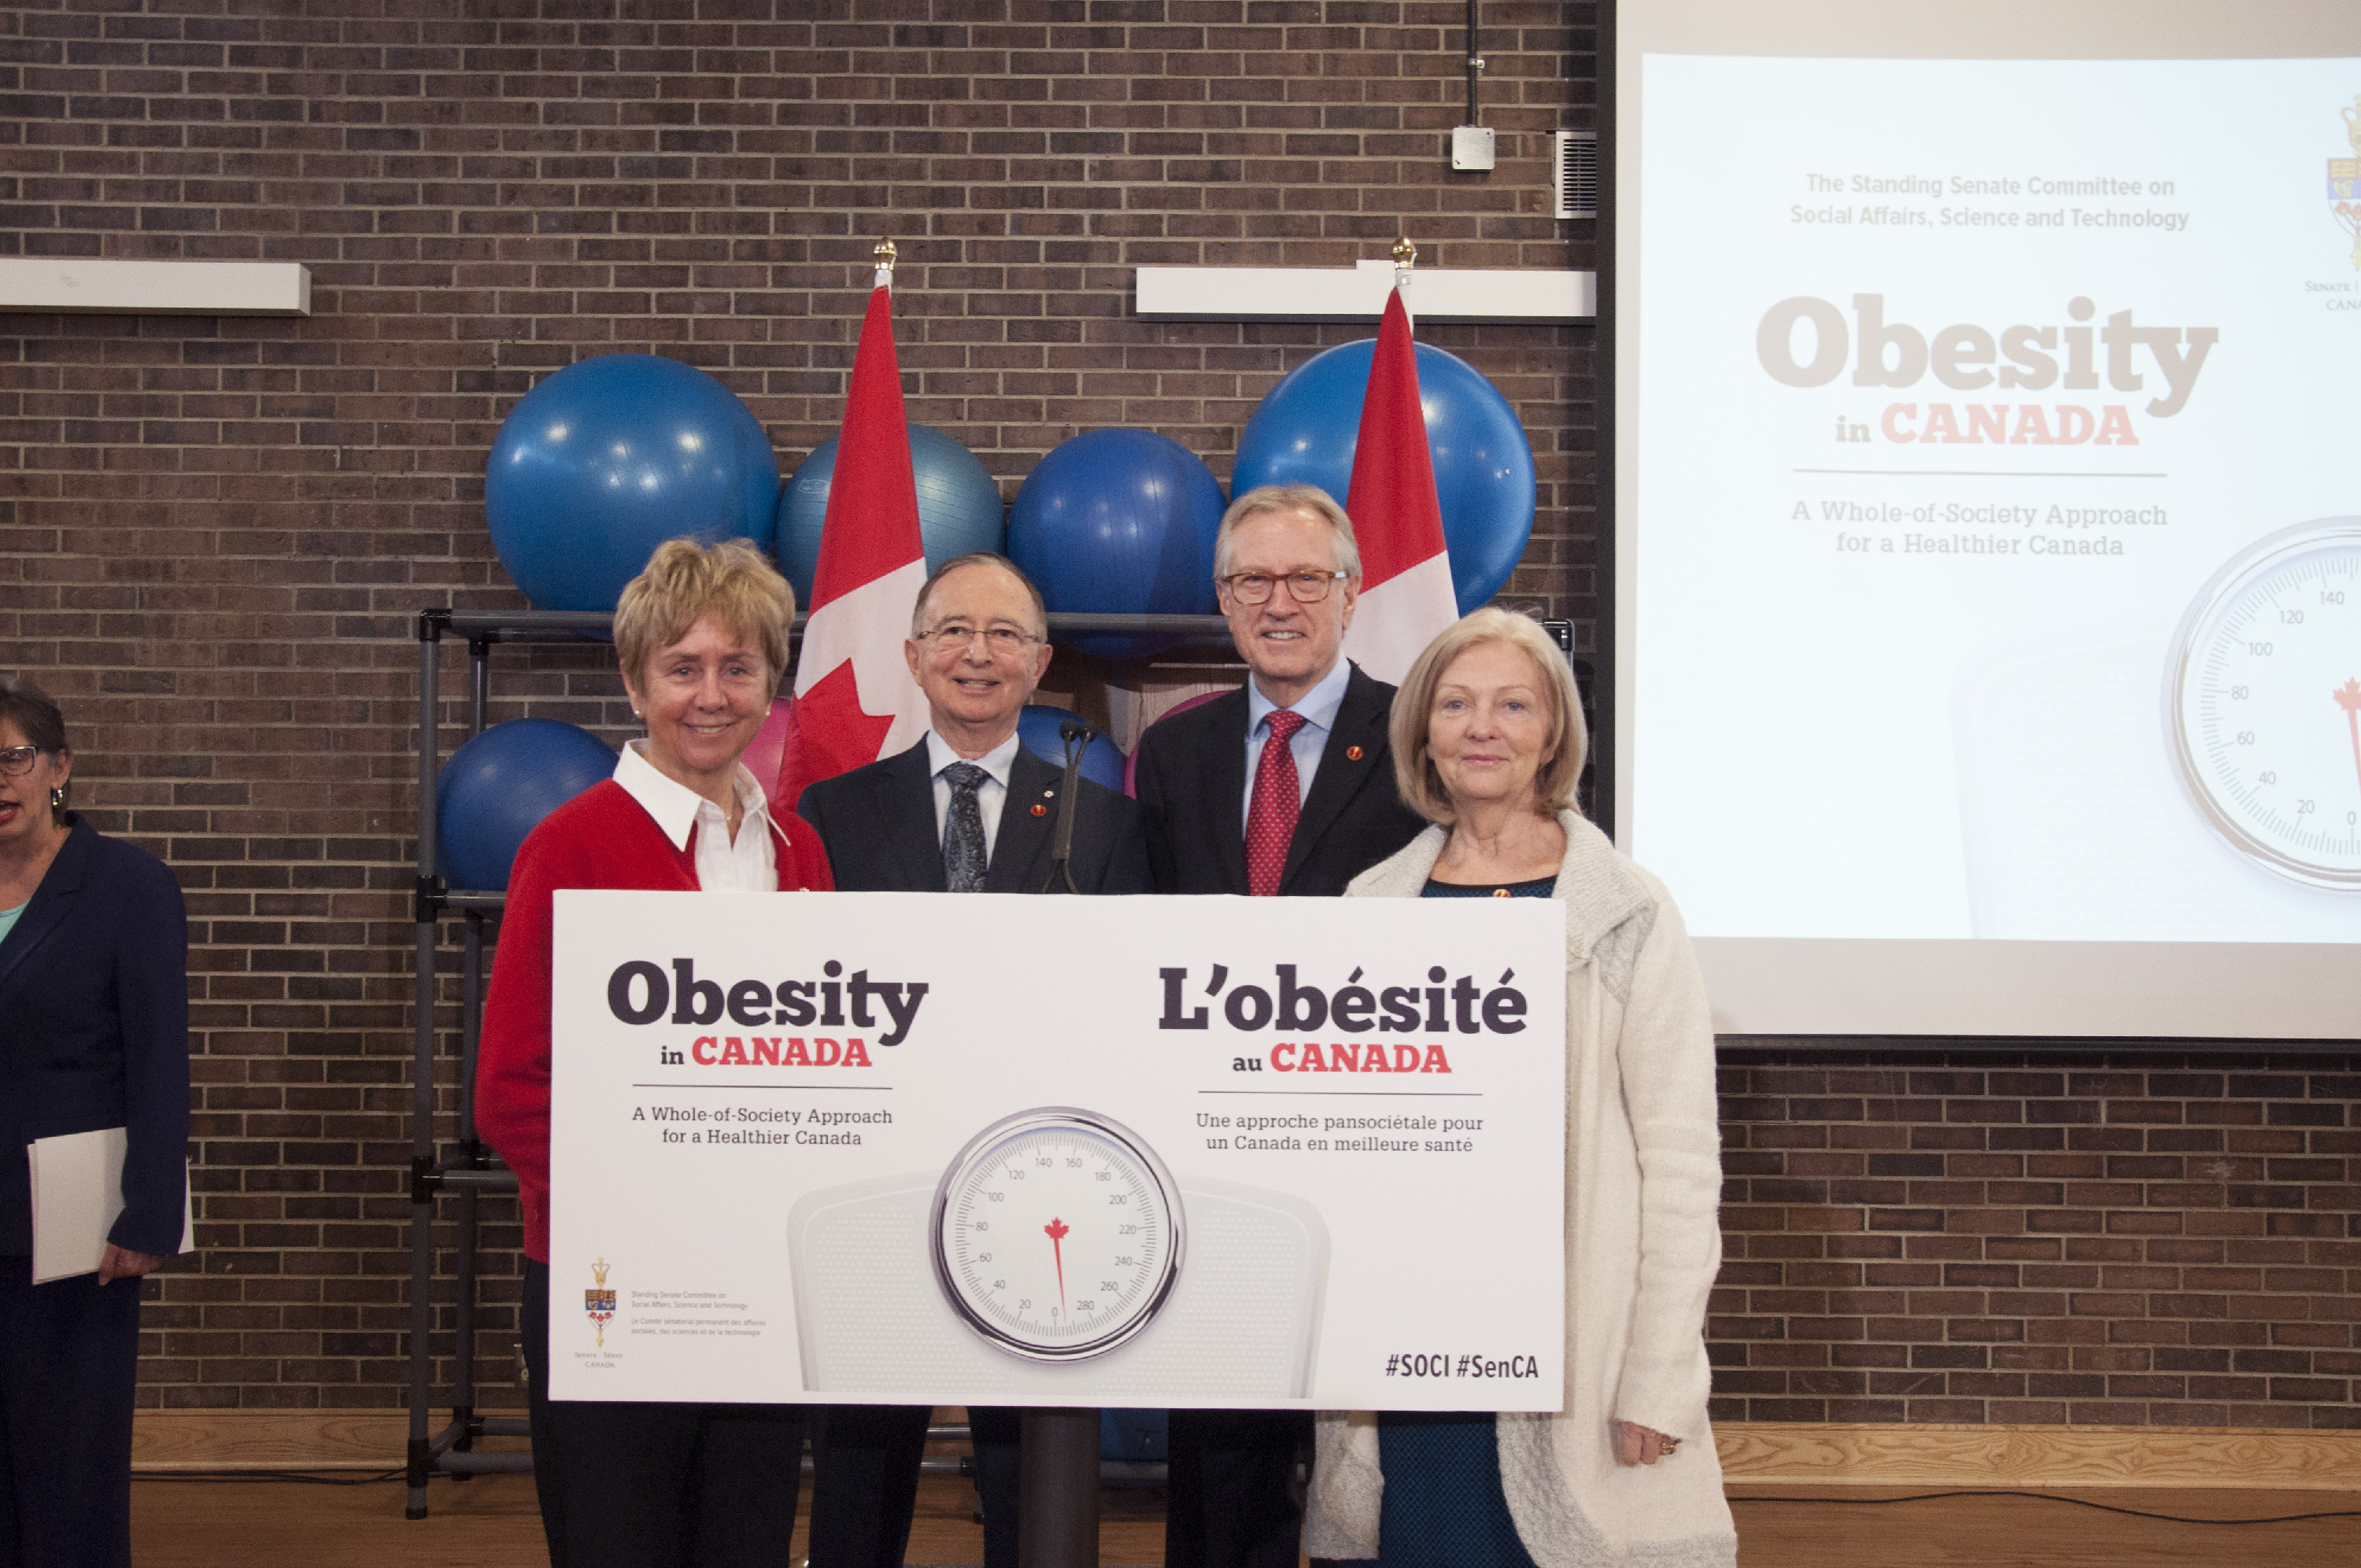 La sénatrice Nancy Greene Raine, le sénateur Kelvin Ogilvie, le sénateur Art Eggleton et la sénatrice Carolyn Stewart Olsen lors du dépôt d’un rapport du Sénat sur l’obésité au Canada en mars 2016.